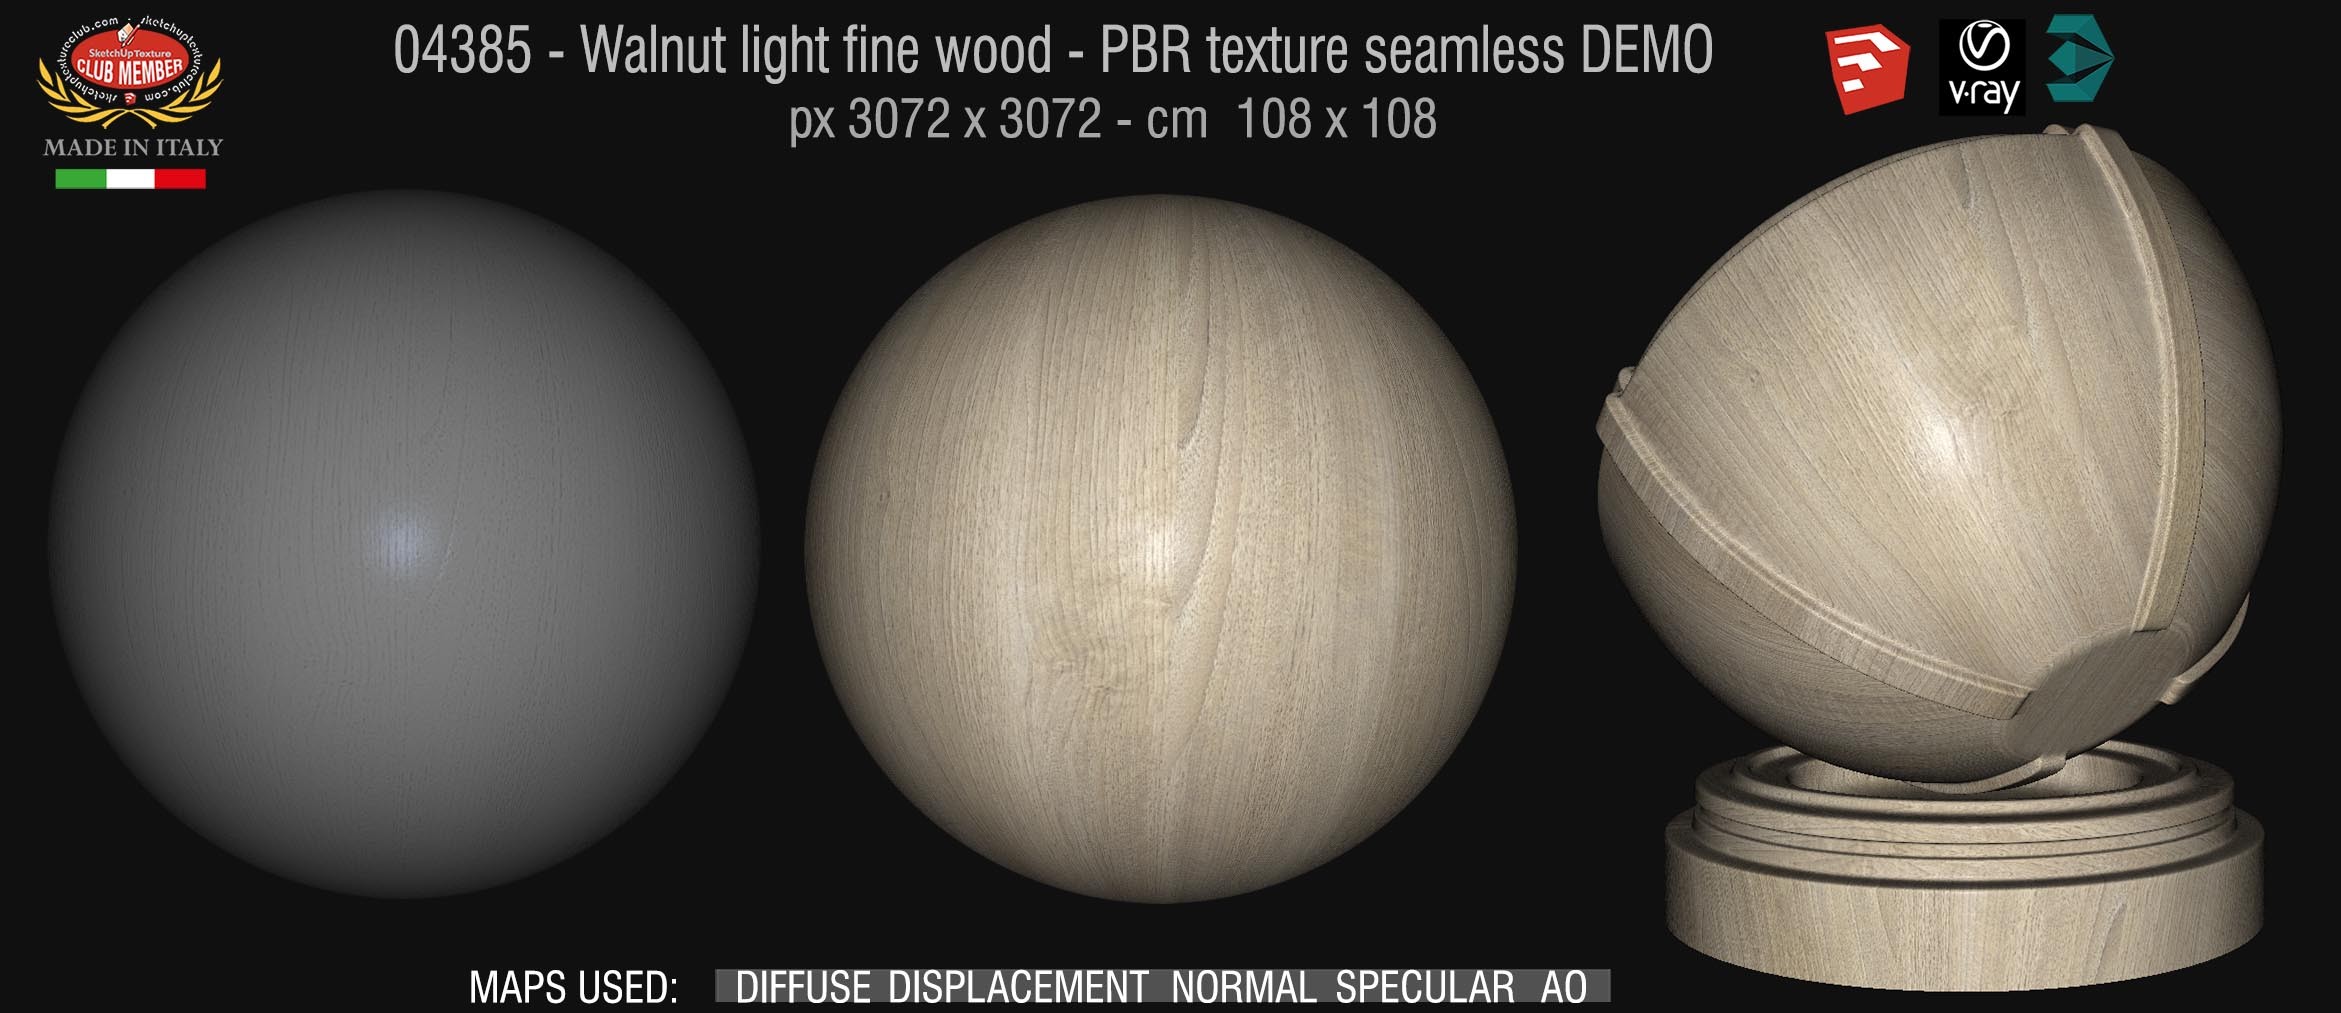 04385 Walnut light fine wood - PBR texture seamless DEMO